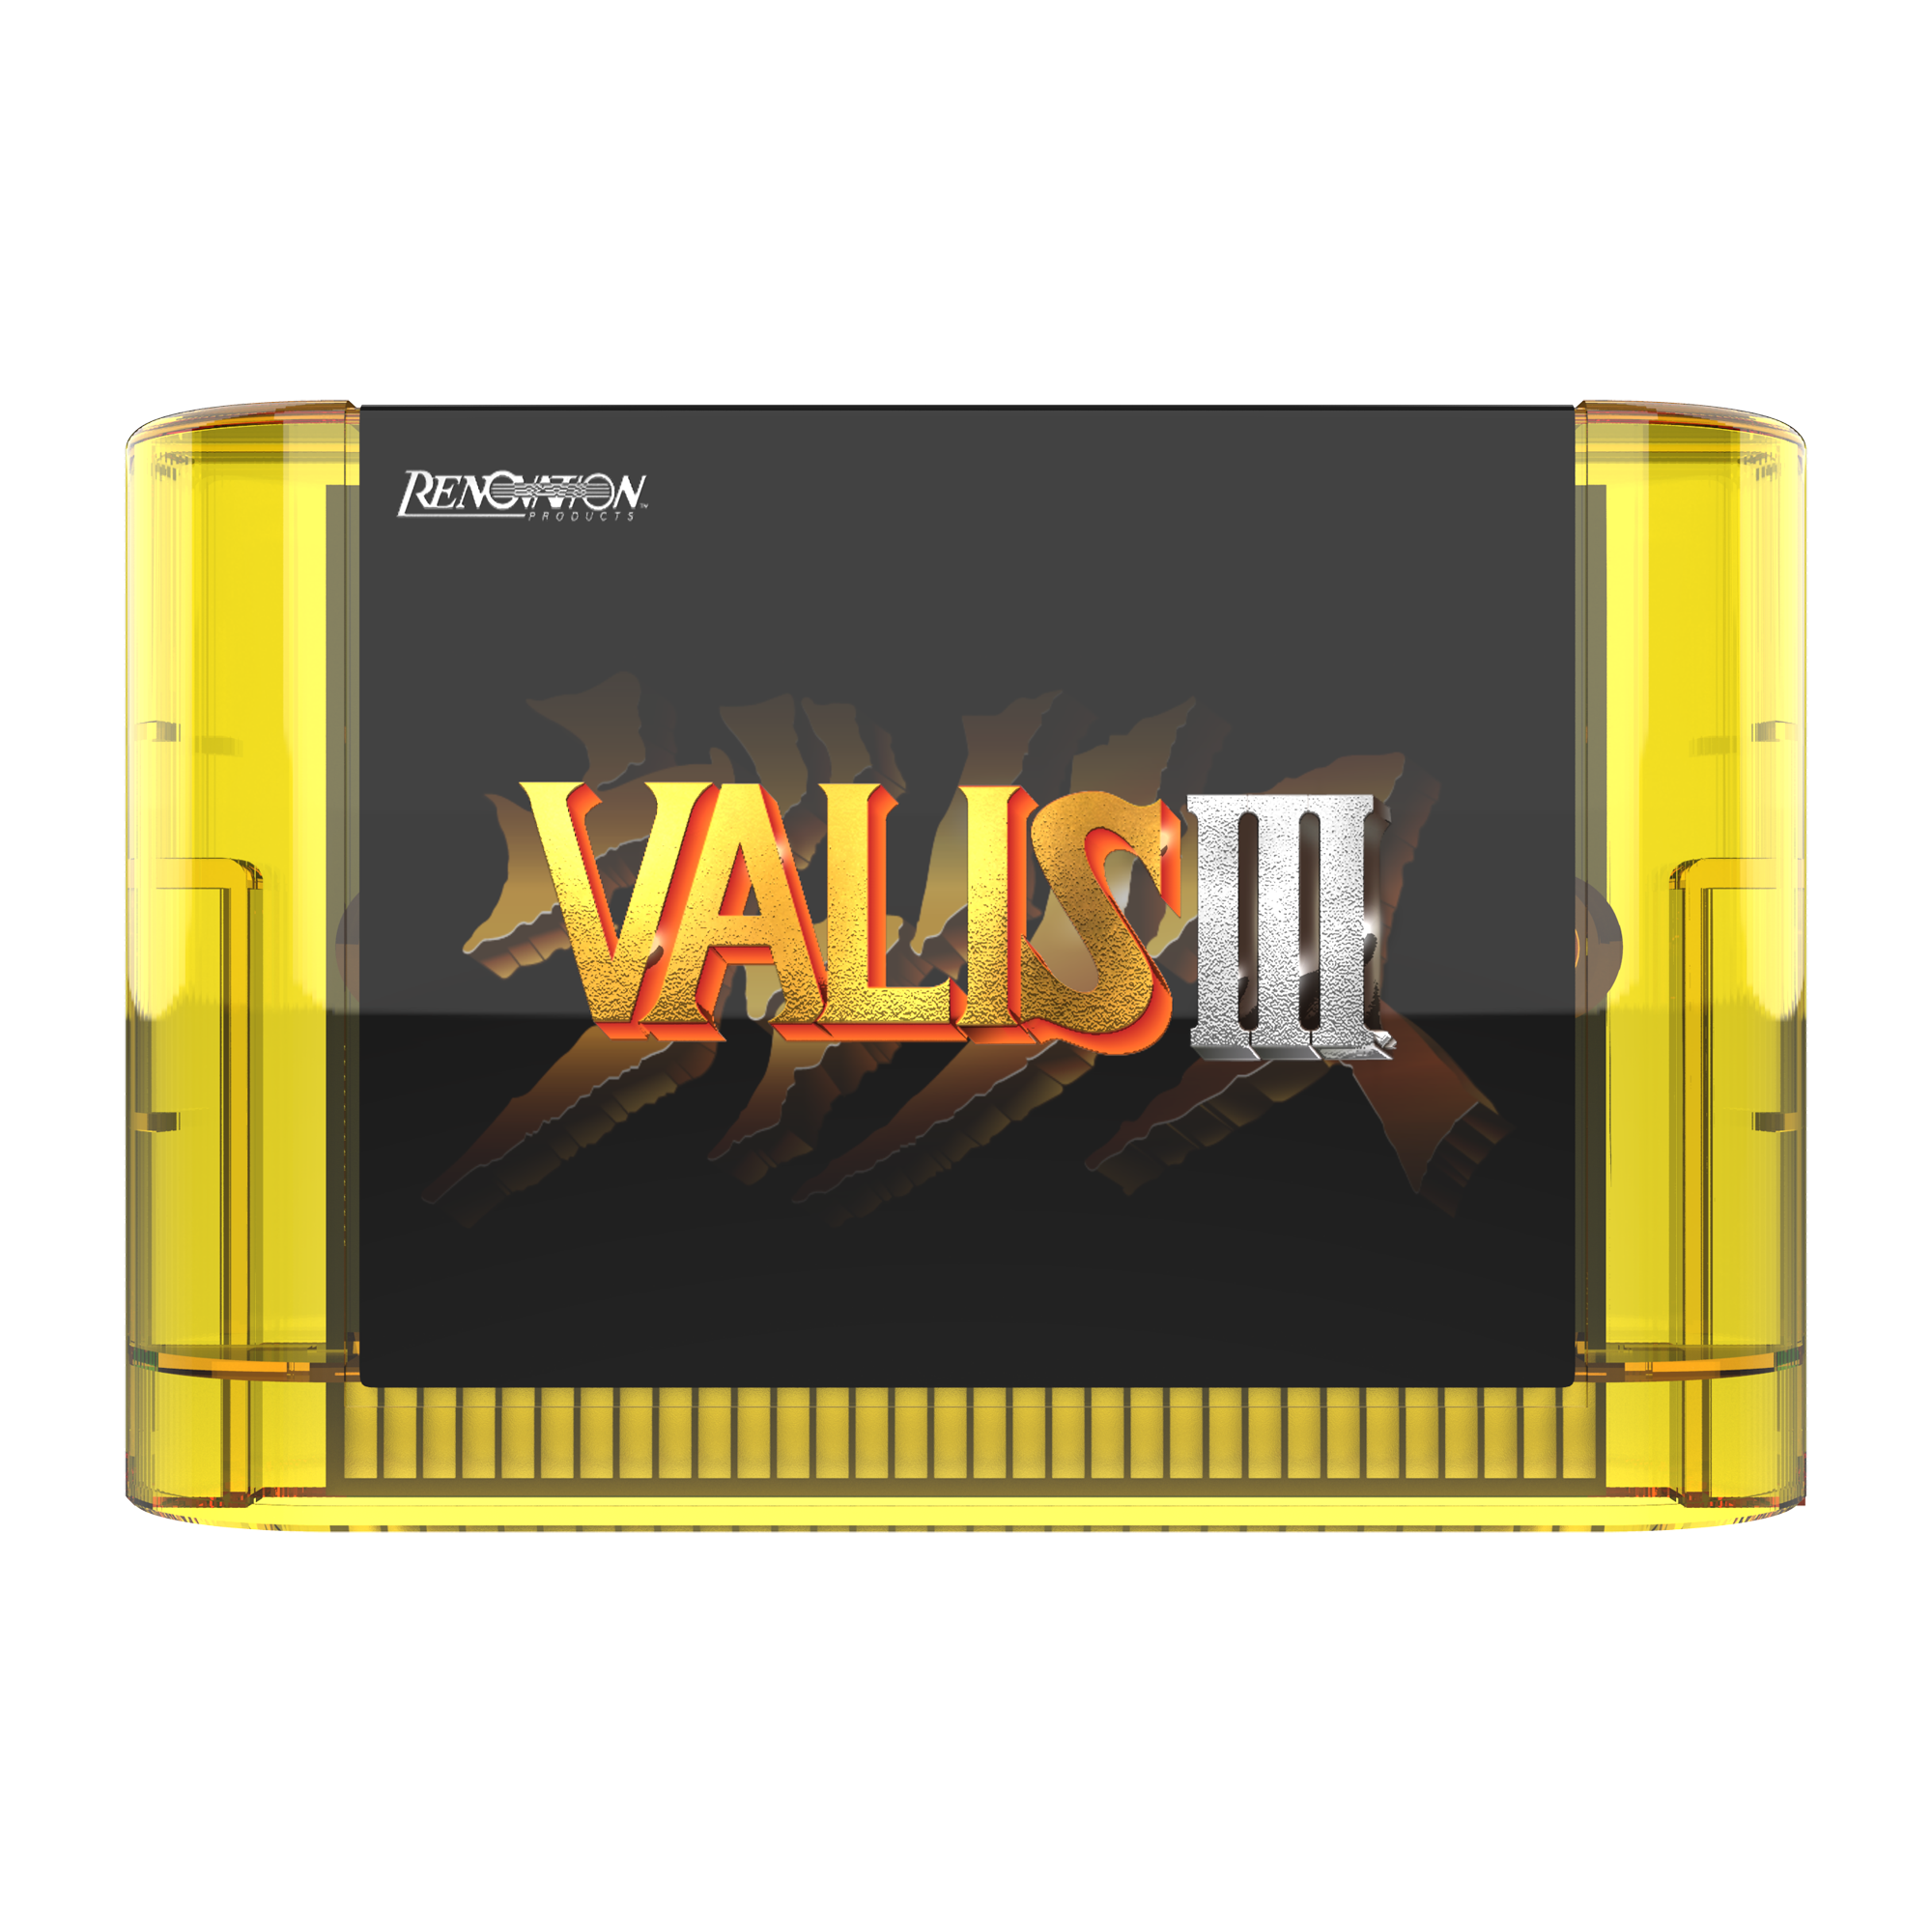 ValisCollectionPressKit Valis III Cartridge 00.png